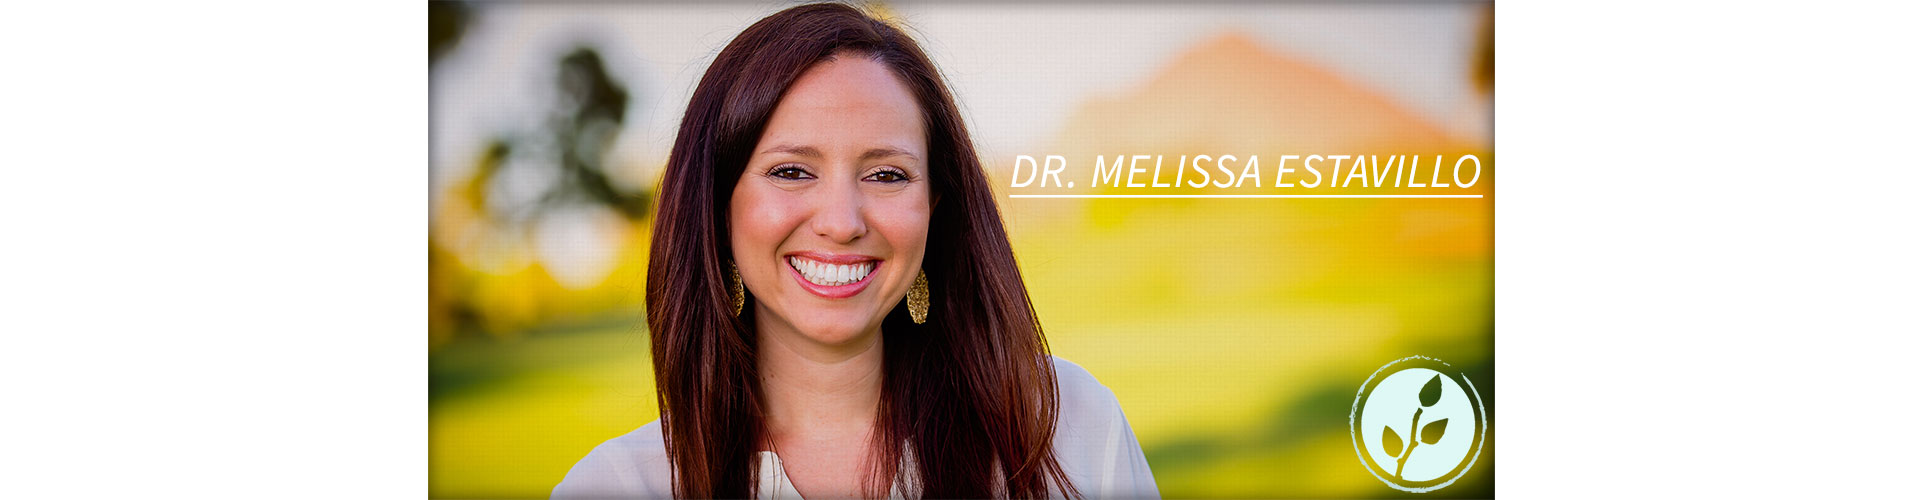 Dr. Melissa Estavillo Biltmore Psychology and Counseling